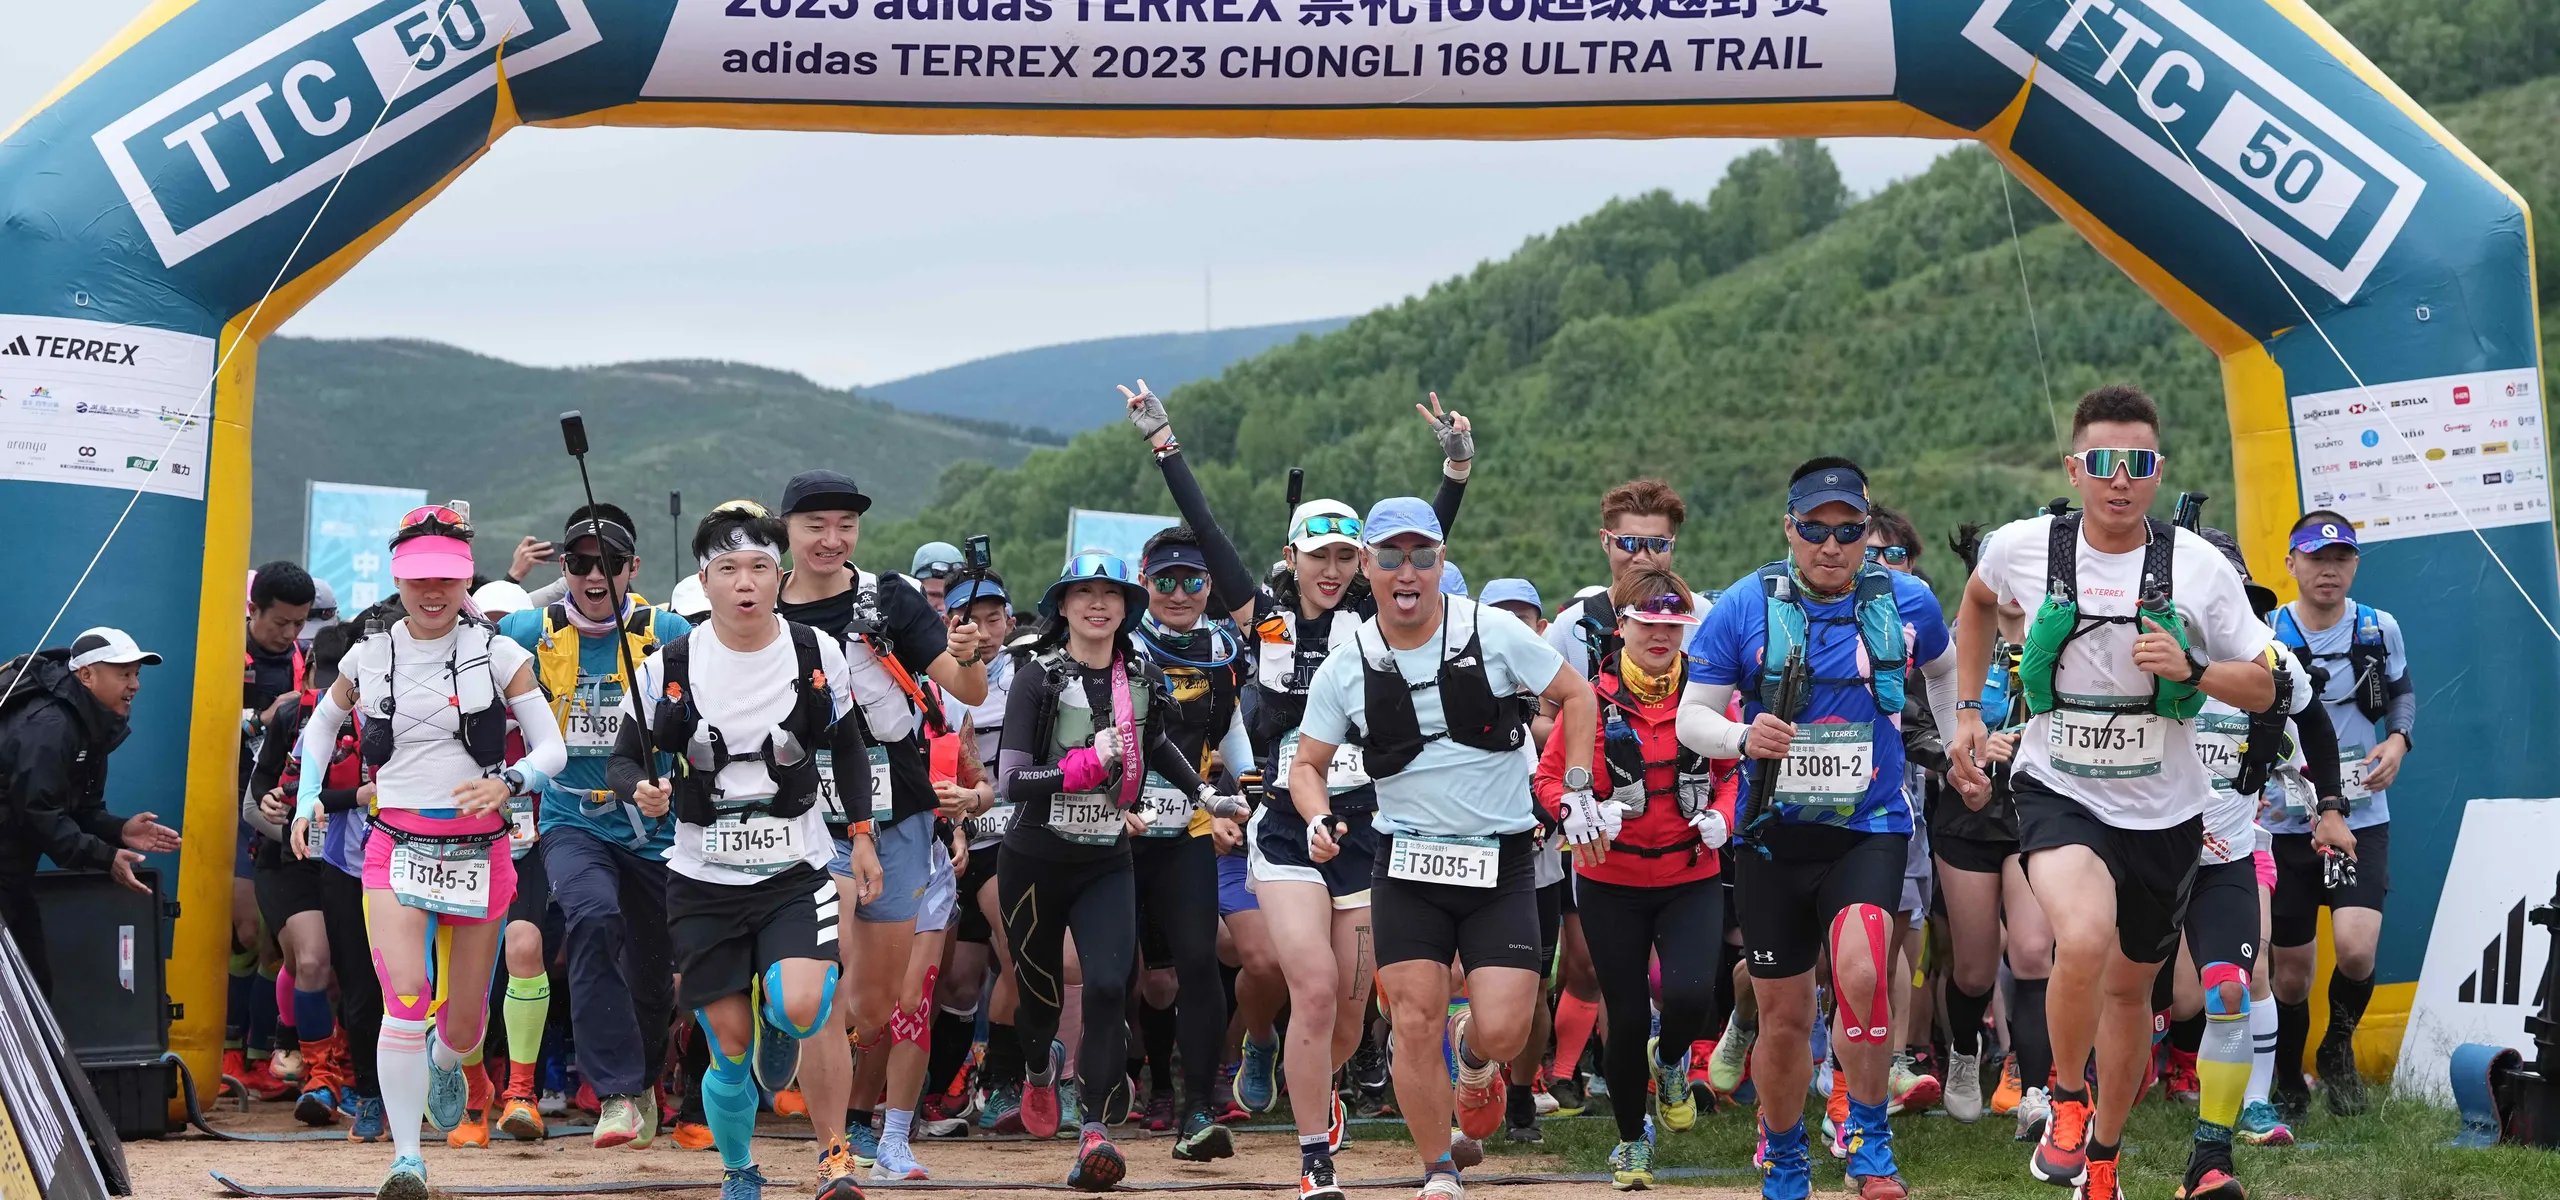 Trail runners begin the Chongli 168